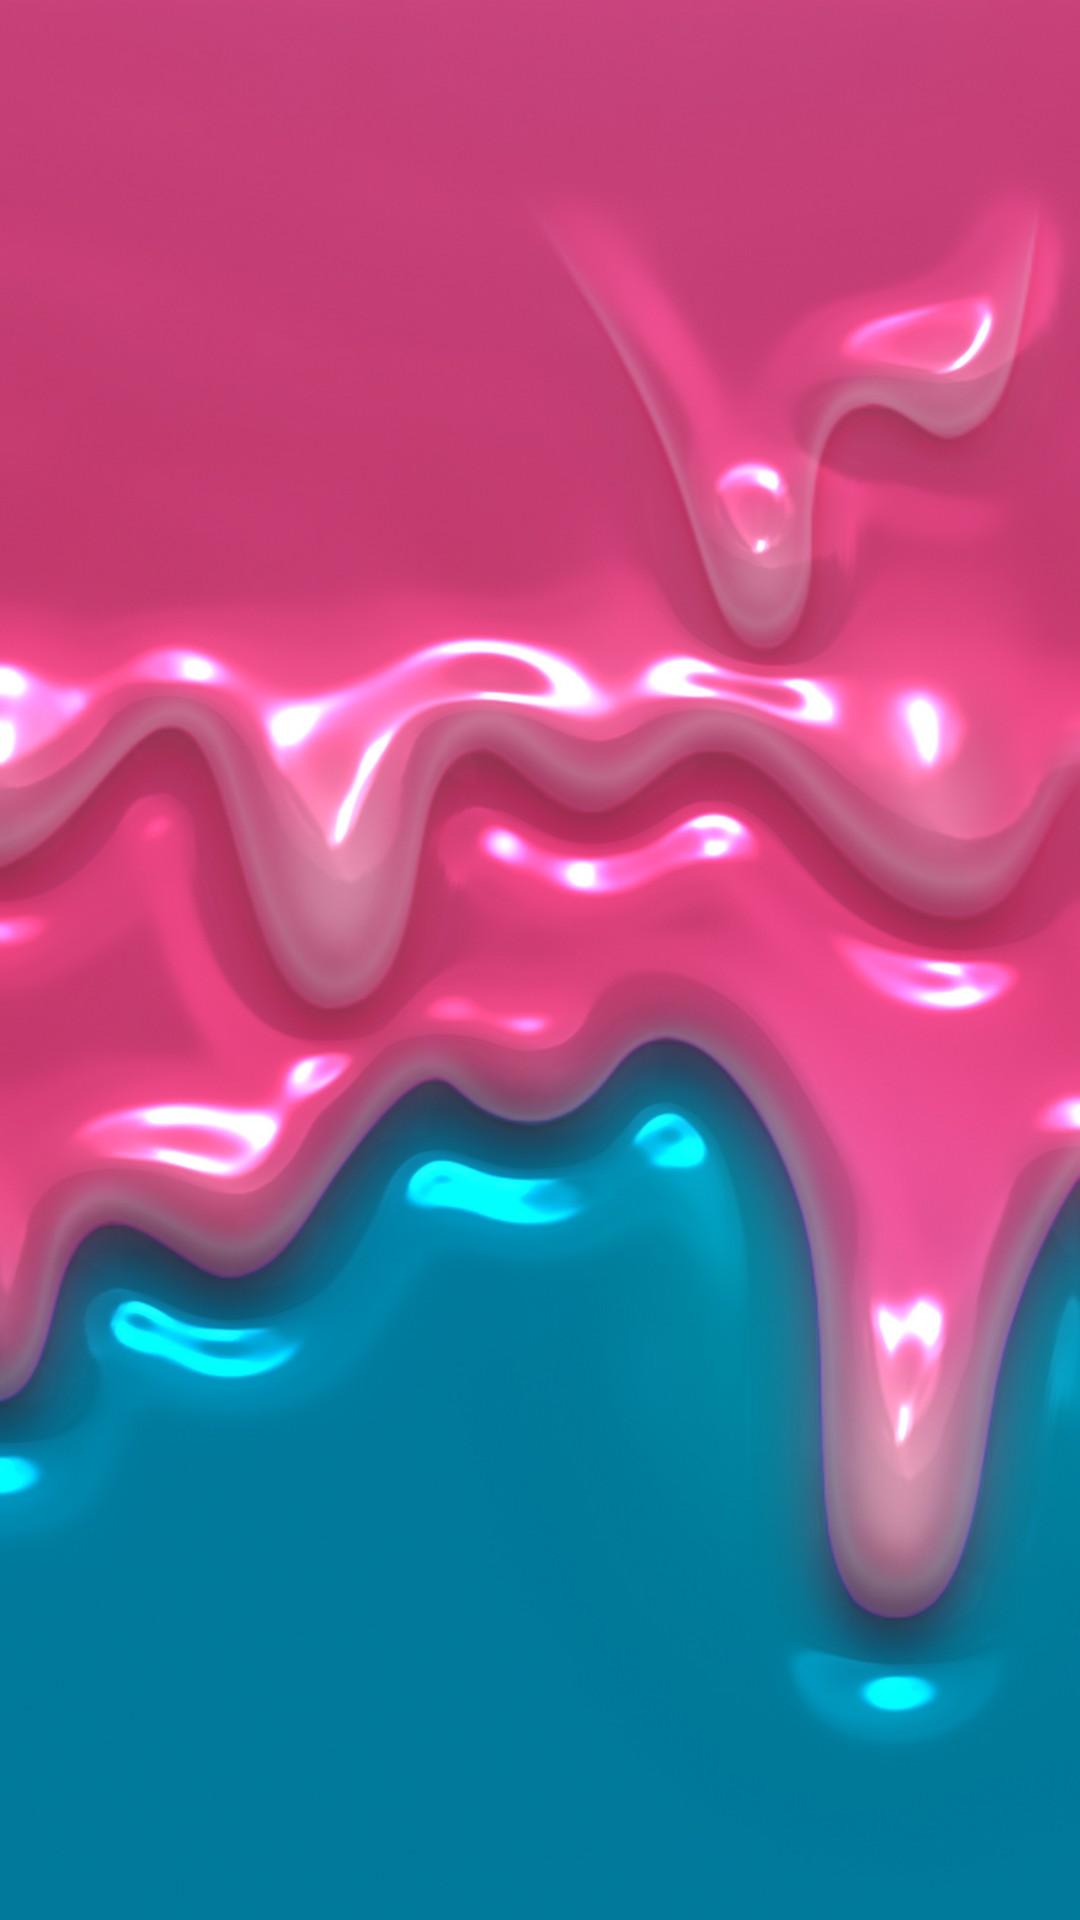 iPhone X Pink Liquid Wallpaper 3D iPhone Wallpaper